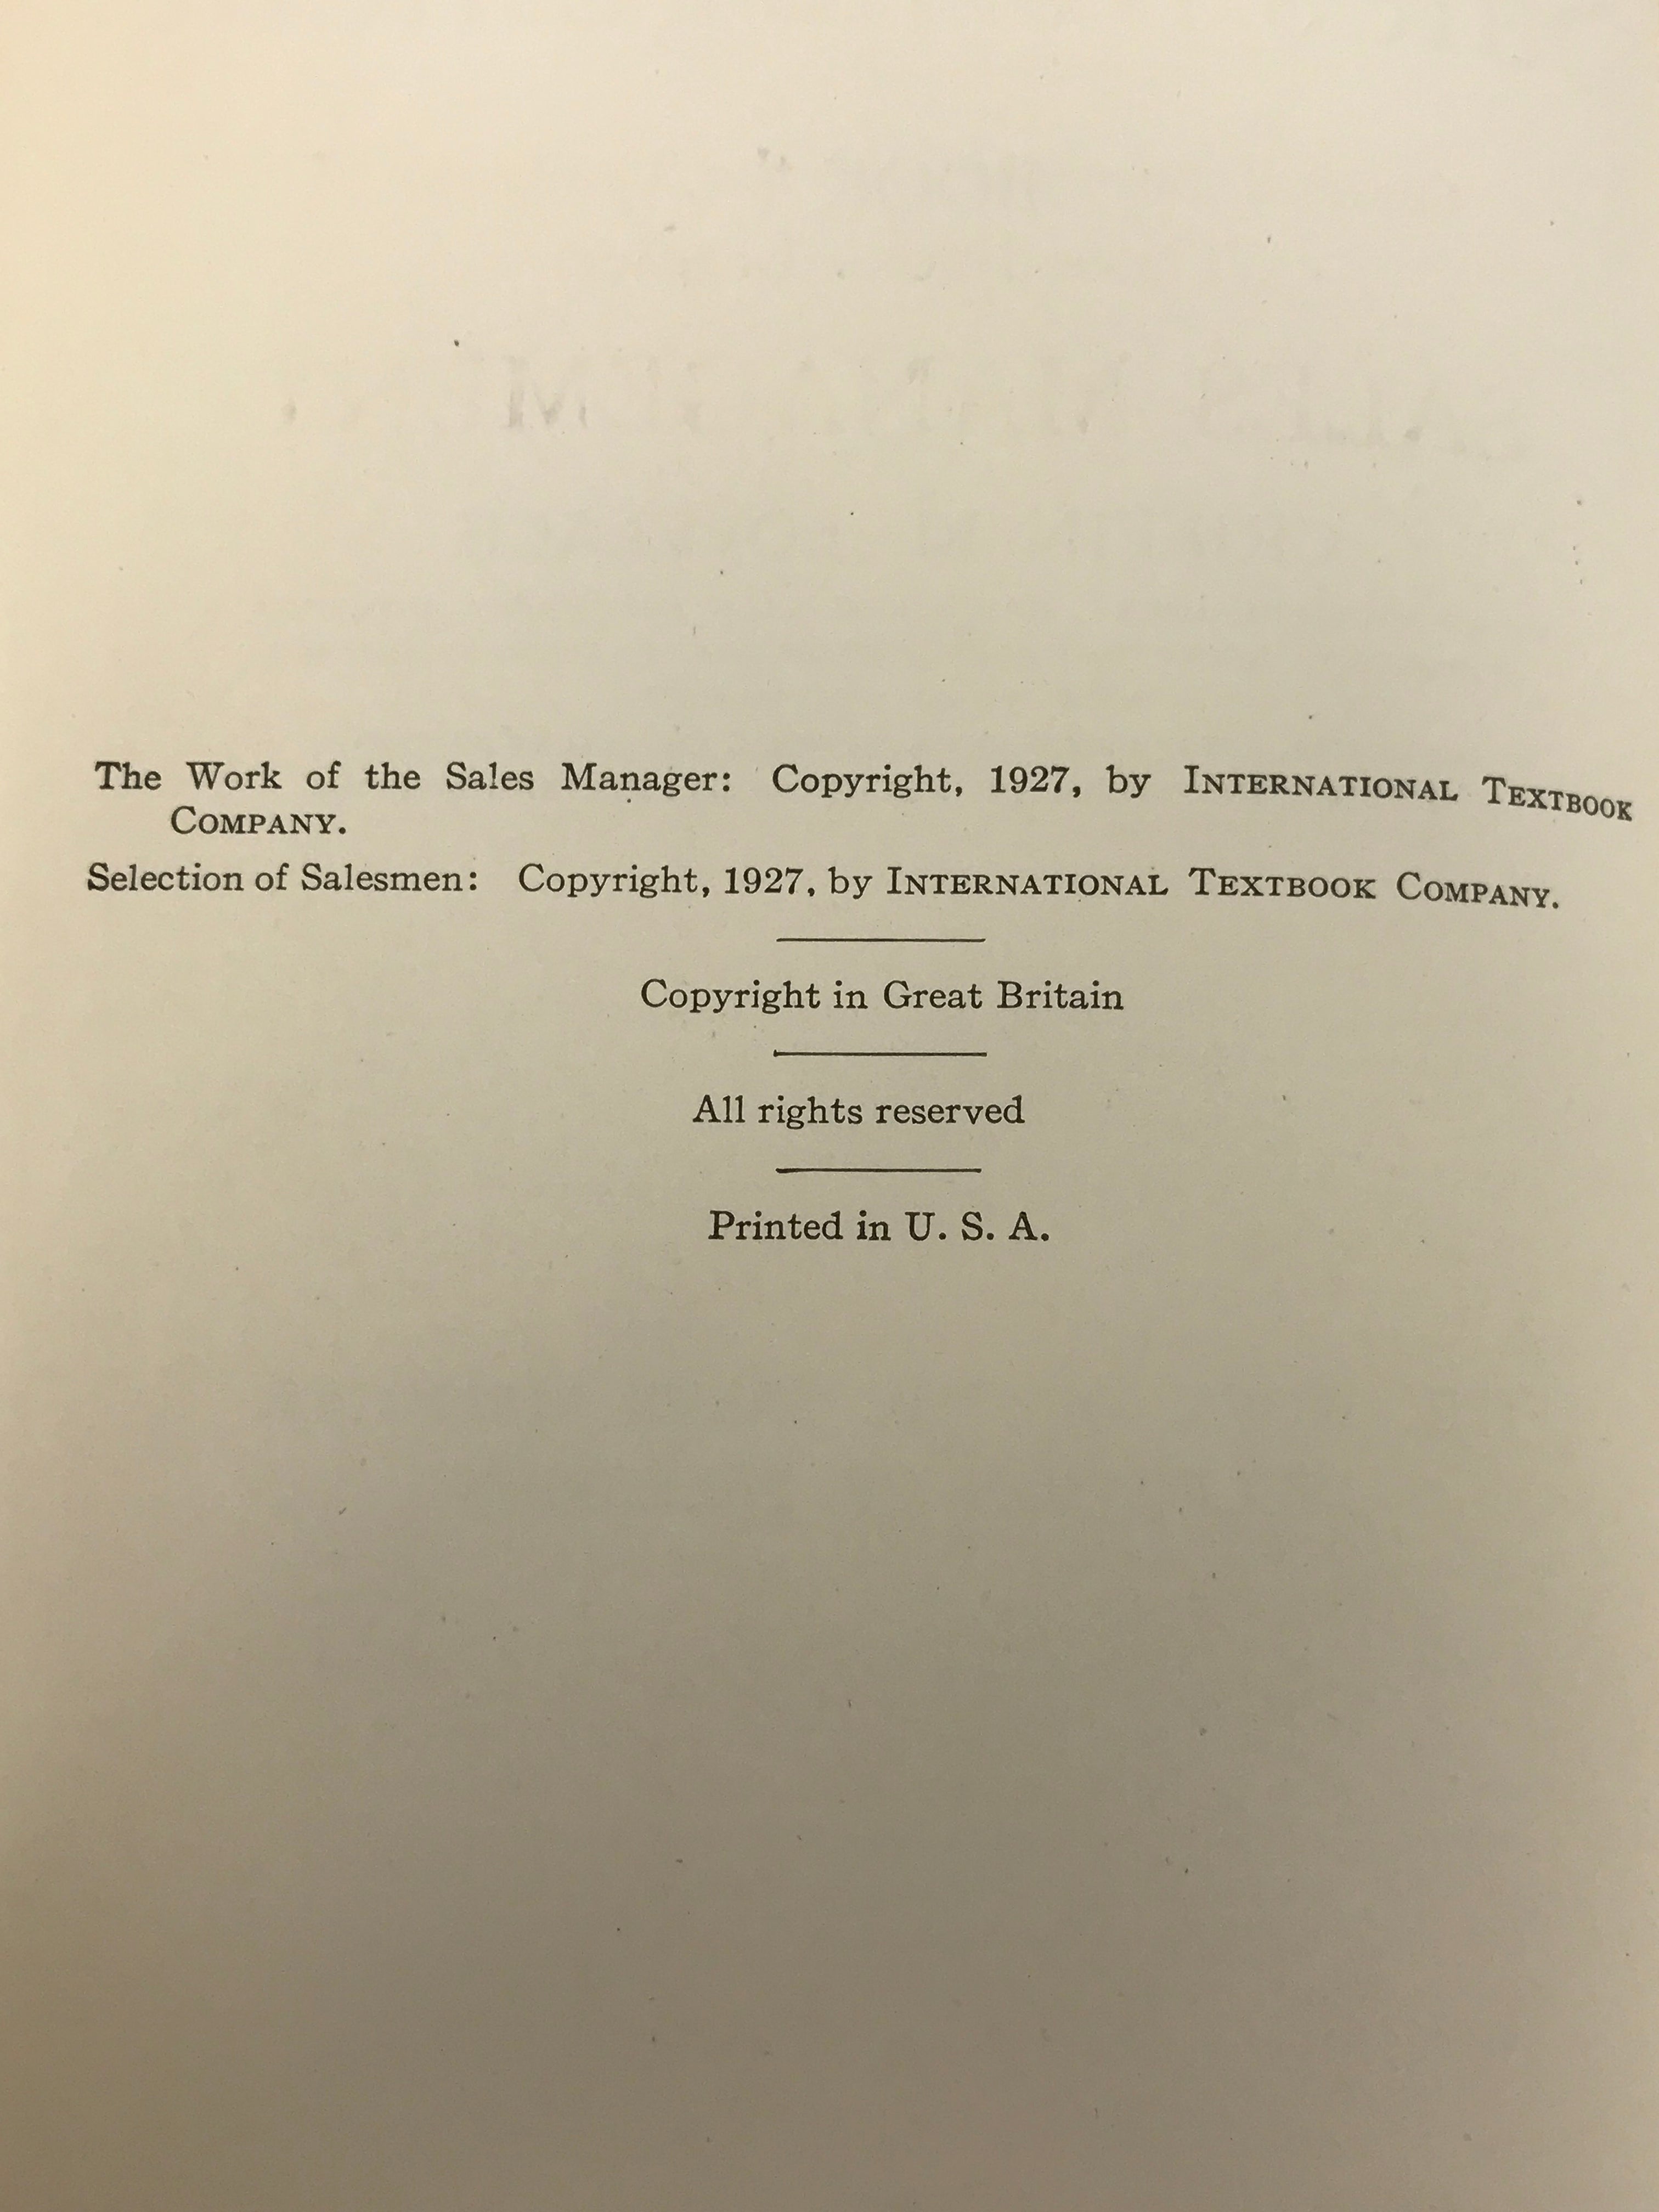 Lot of 4 Antique Sales Management and Business Economics Books 1926-1927 HC